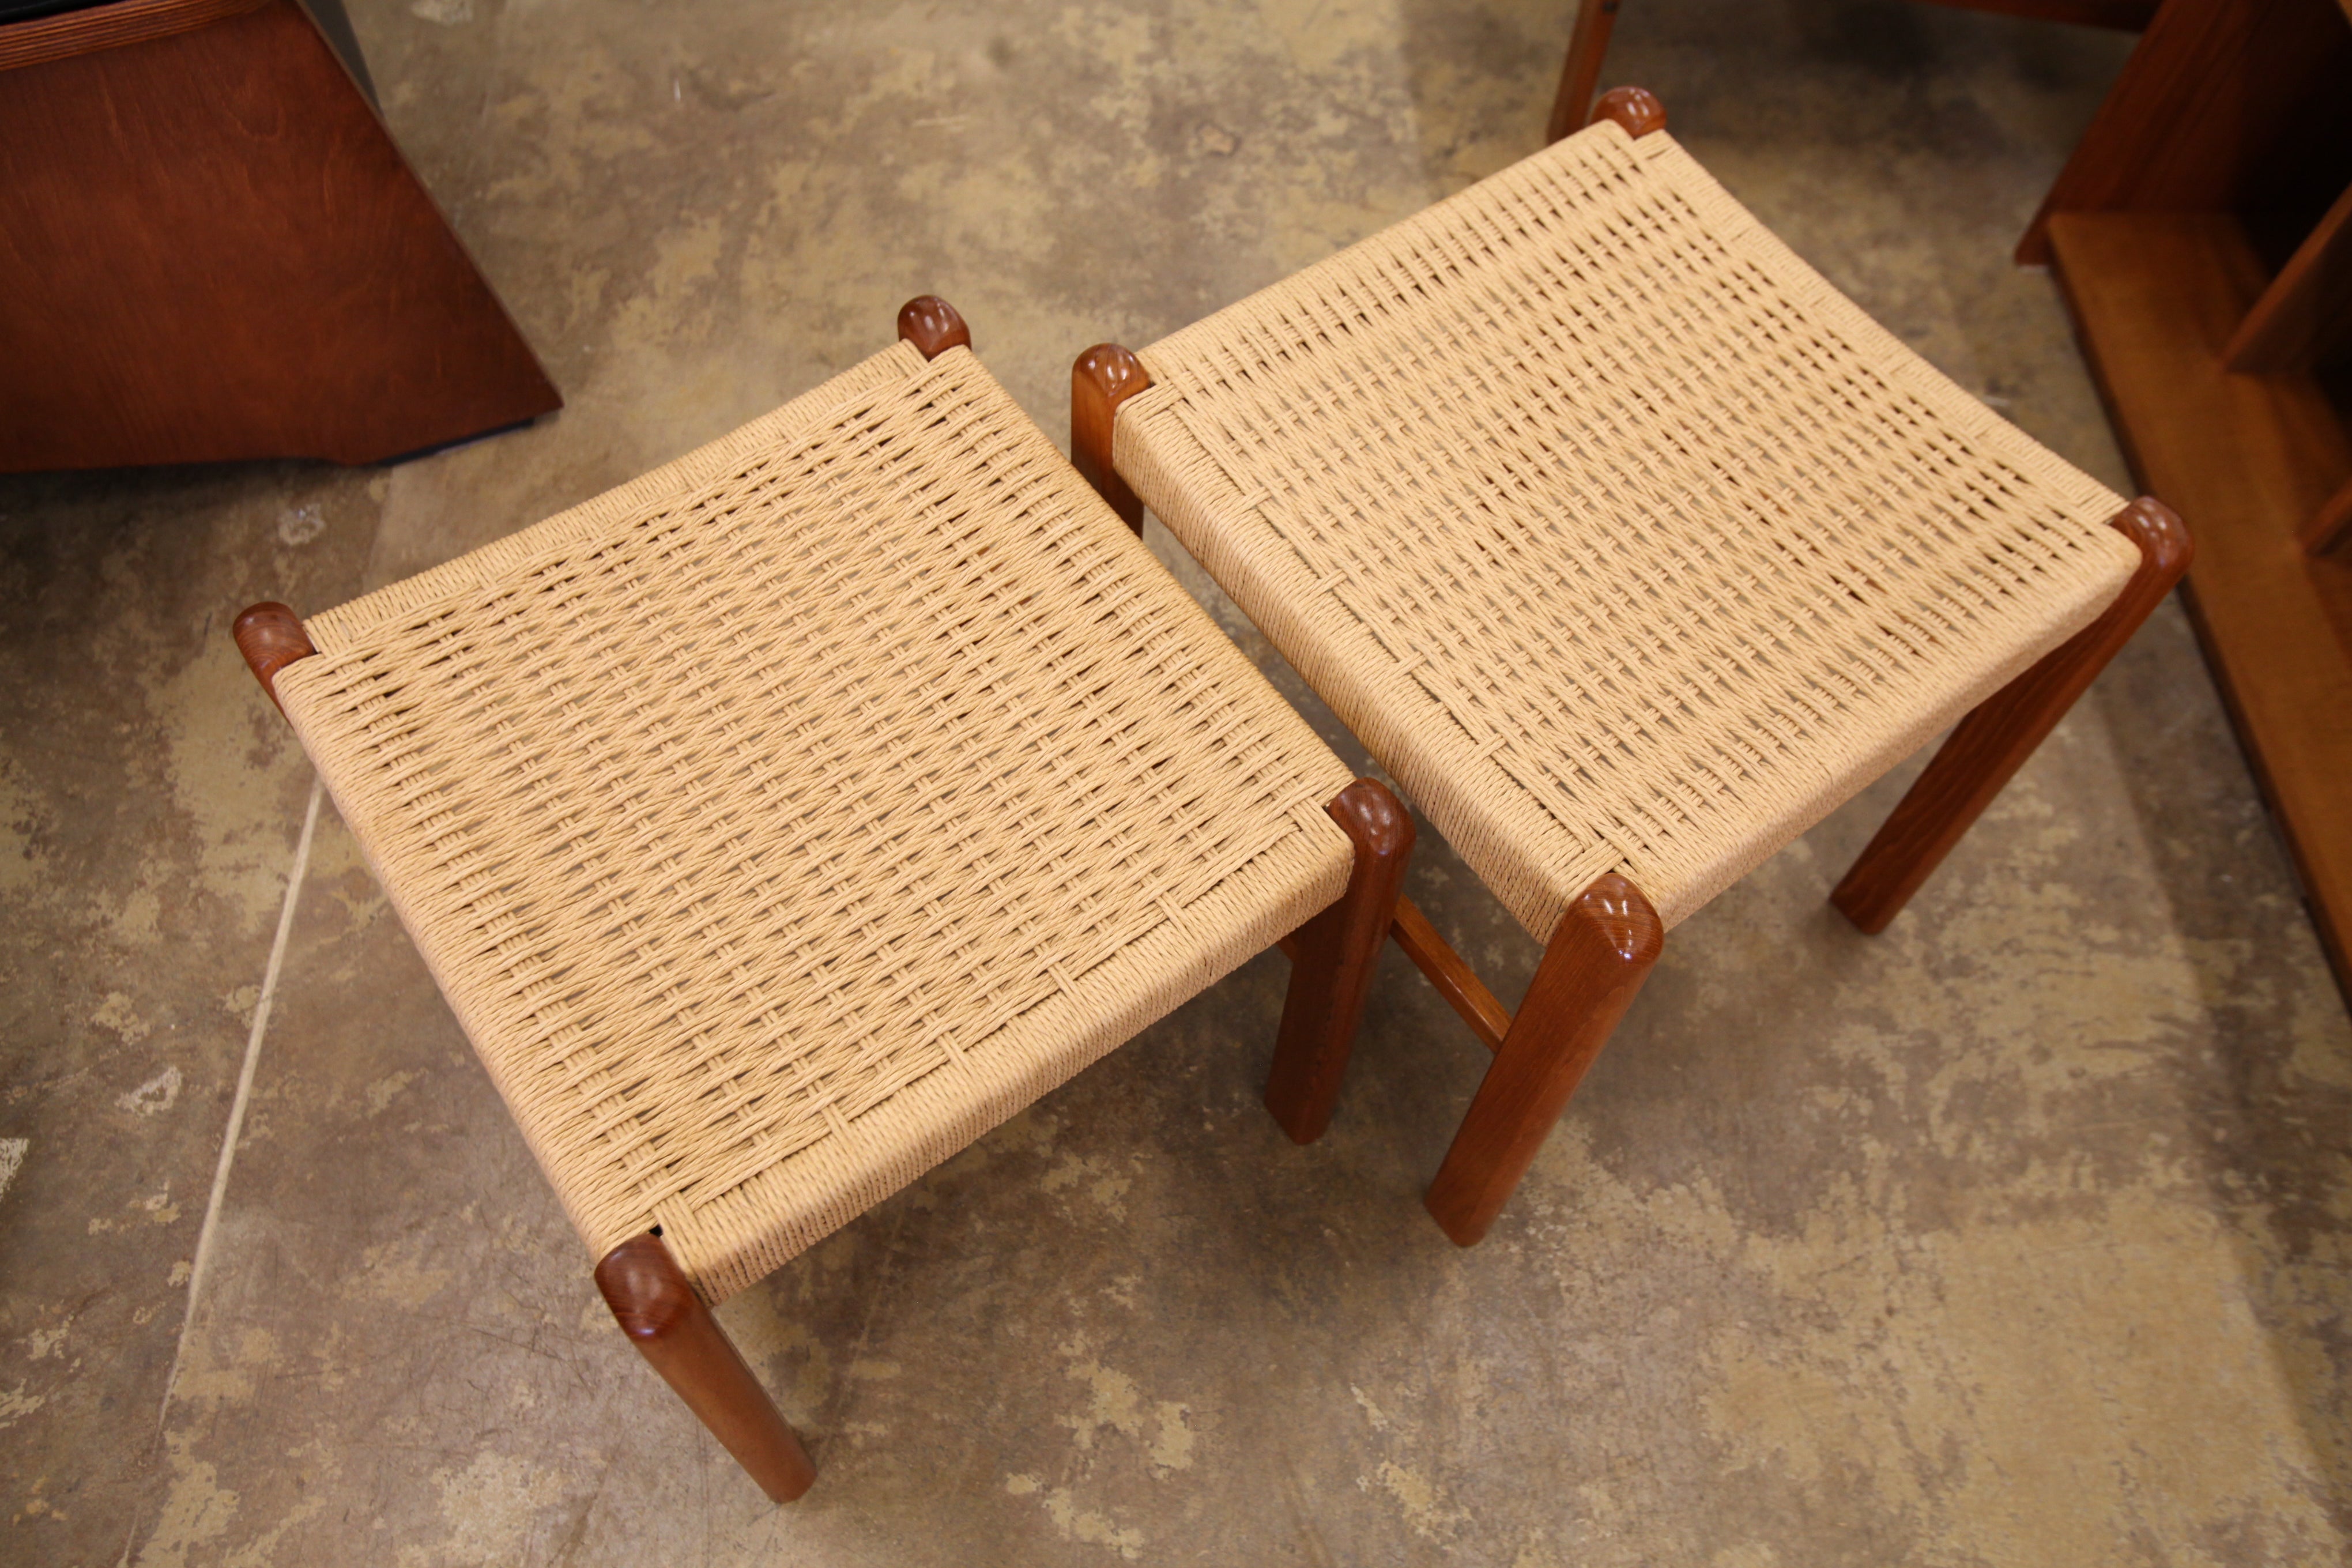 Vintage Lower Teak Paper Cord Footstool (17.25" x 18.25" x 16.5"H)